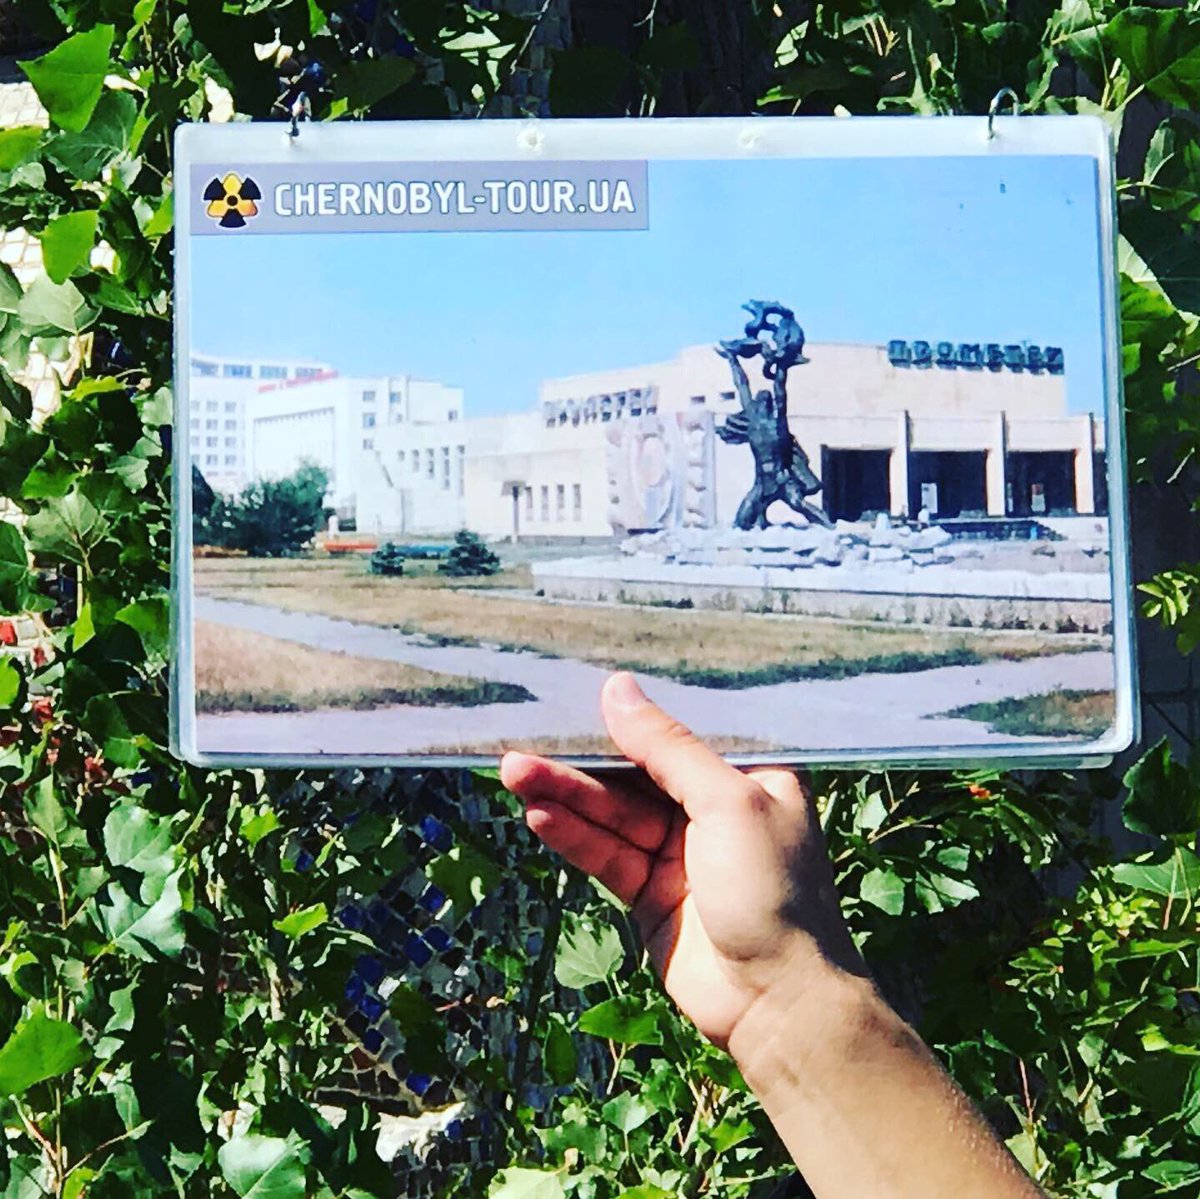 On découvre ensuite la salle de musique et la salle de cinéma. De superbes sculptures en mosaïque ornent leurs frontons.  #Tchernobyl  (Plus de photos:  http://Instagram.com/nashtagstagram )